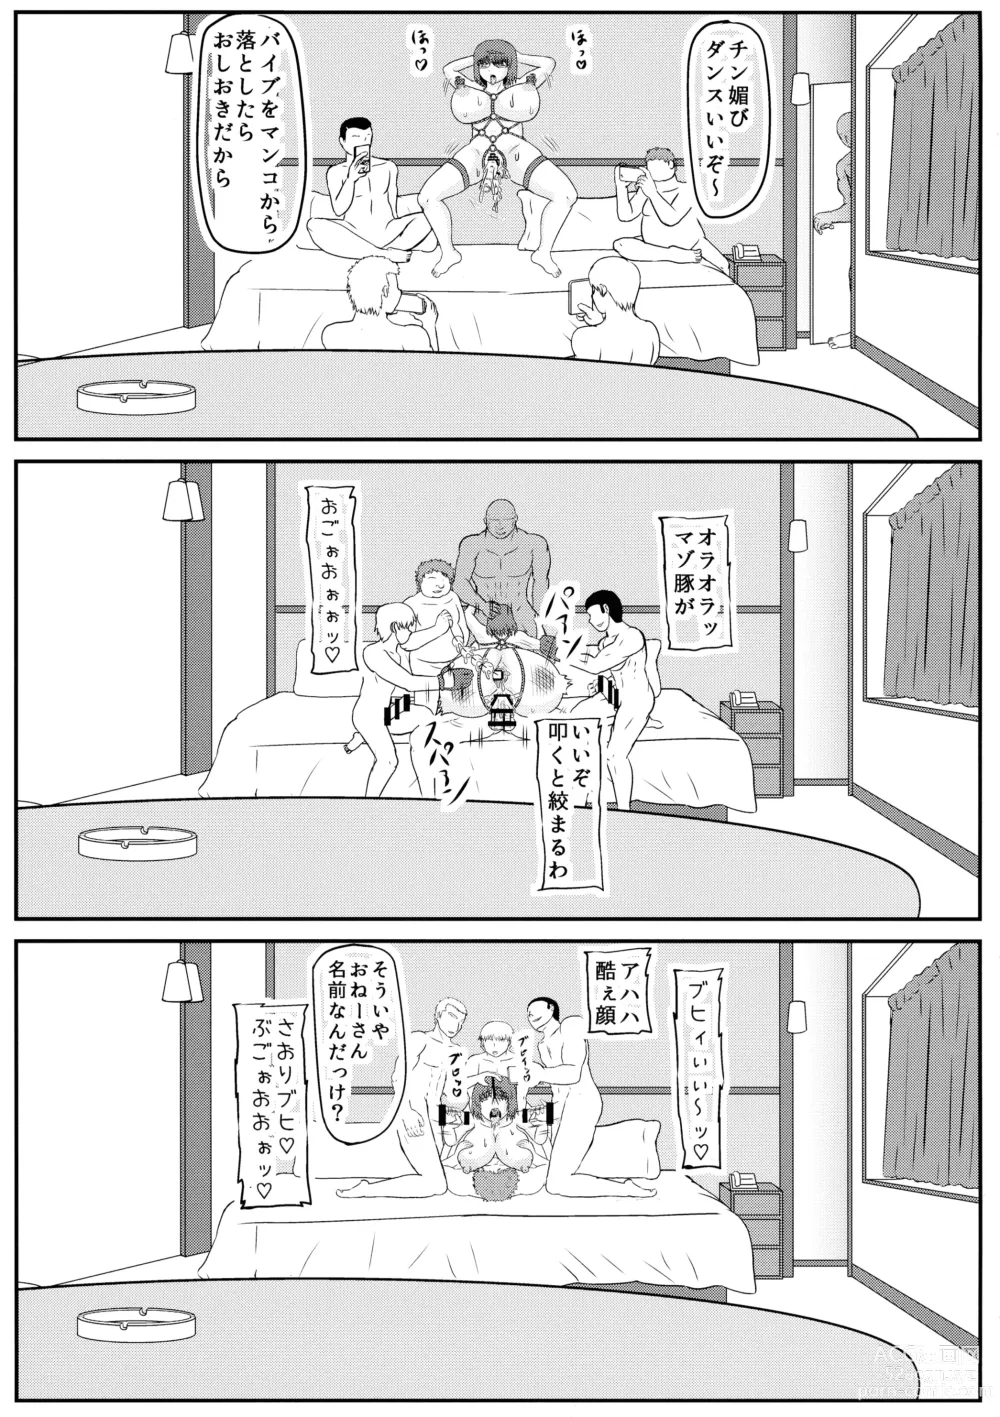 Page 13 of doujinshi MISS JUDEGE Daraku Binjo Saori